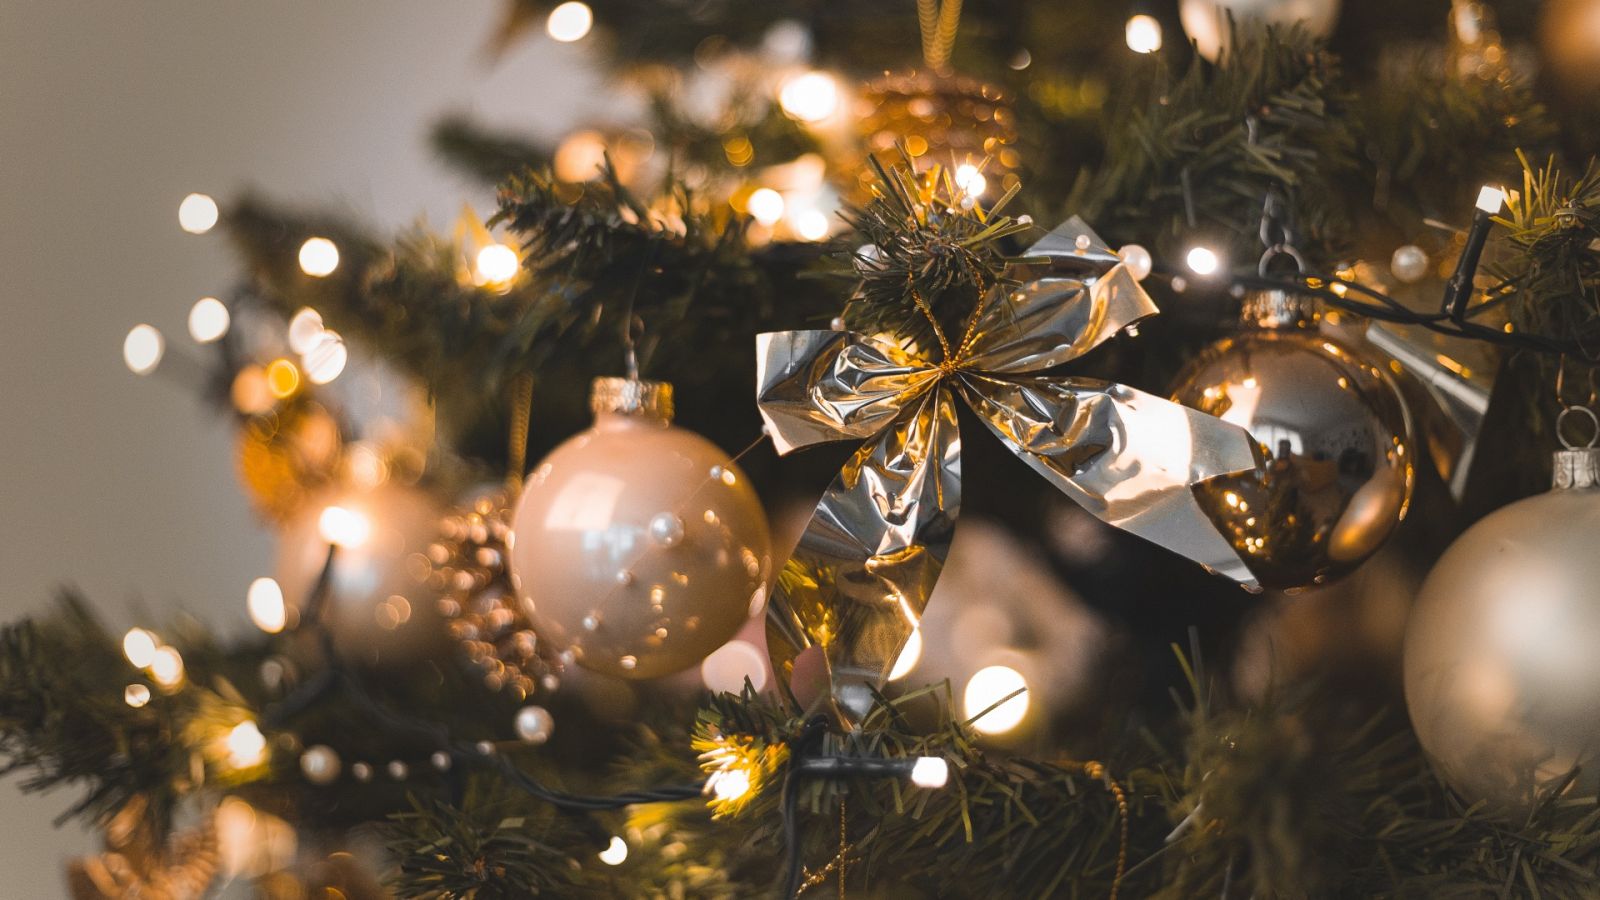 Un árbol de navidad en tonos dorados desprende glamour y elegancia